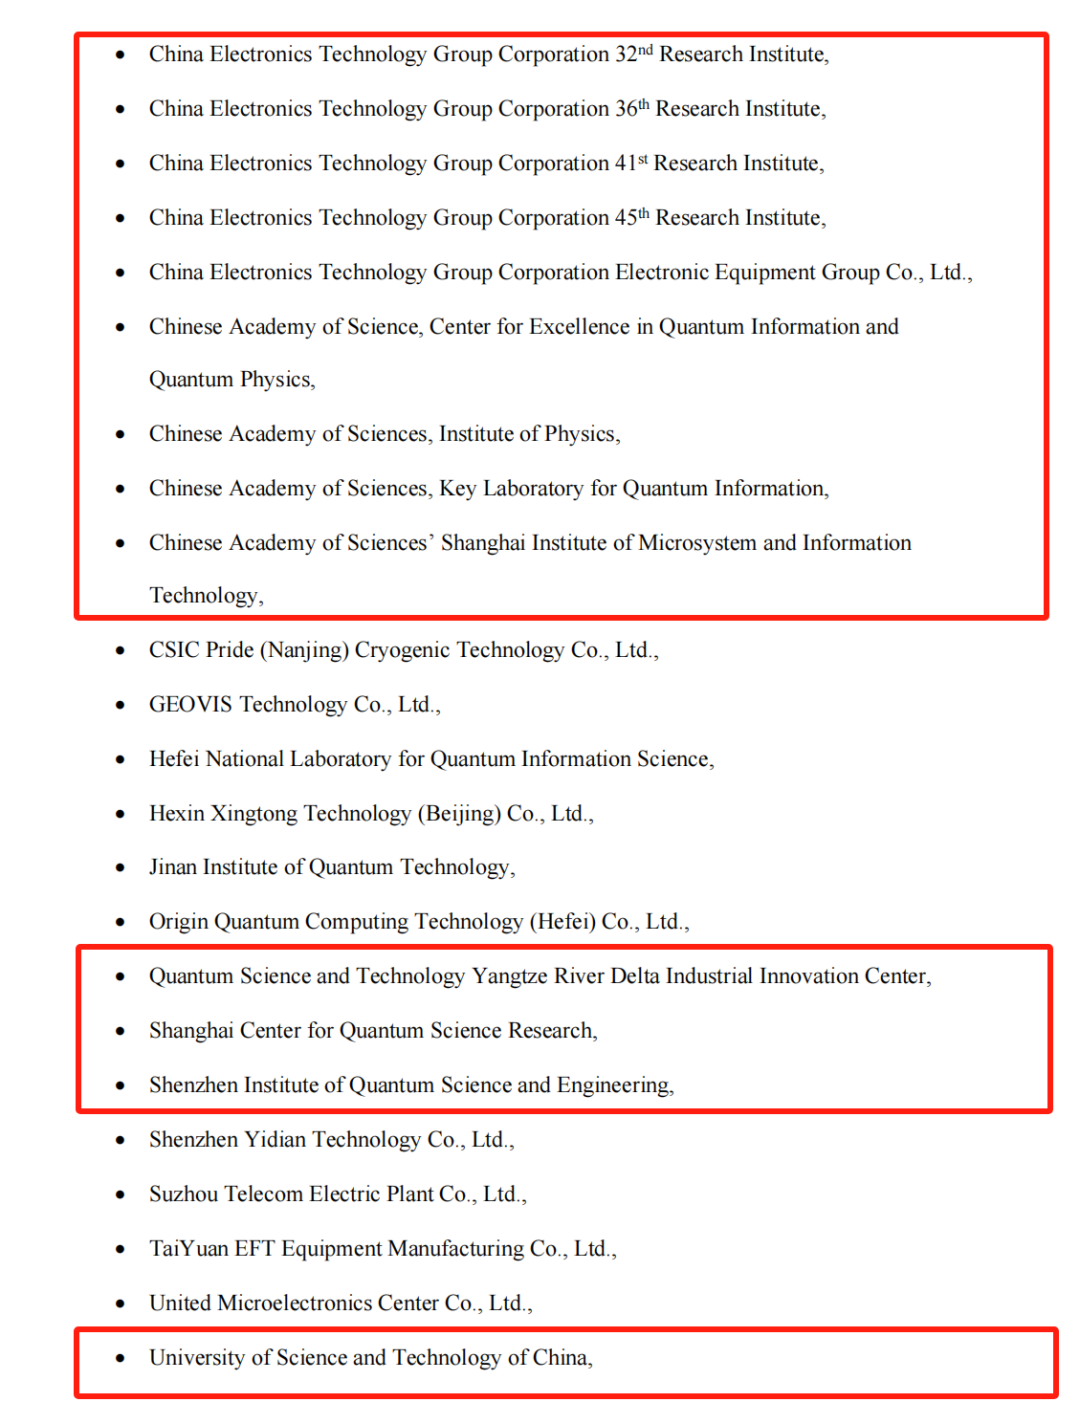 美国实体清单新增22家中国量子科技研发机构